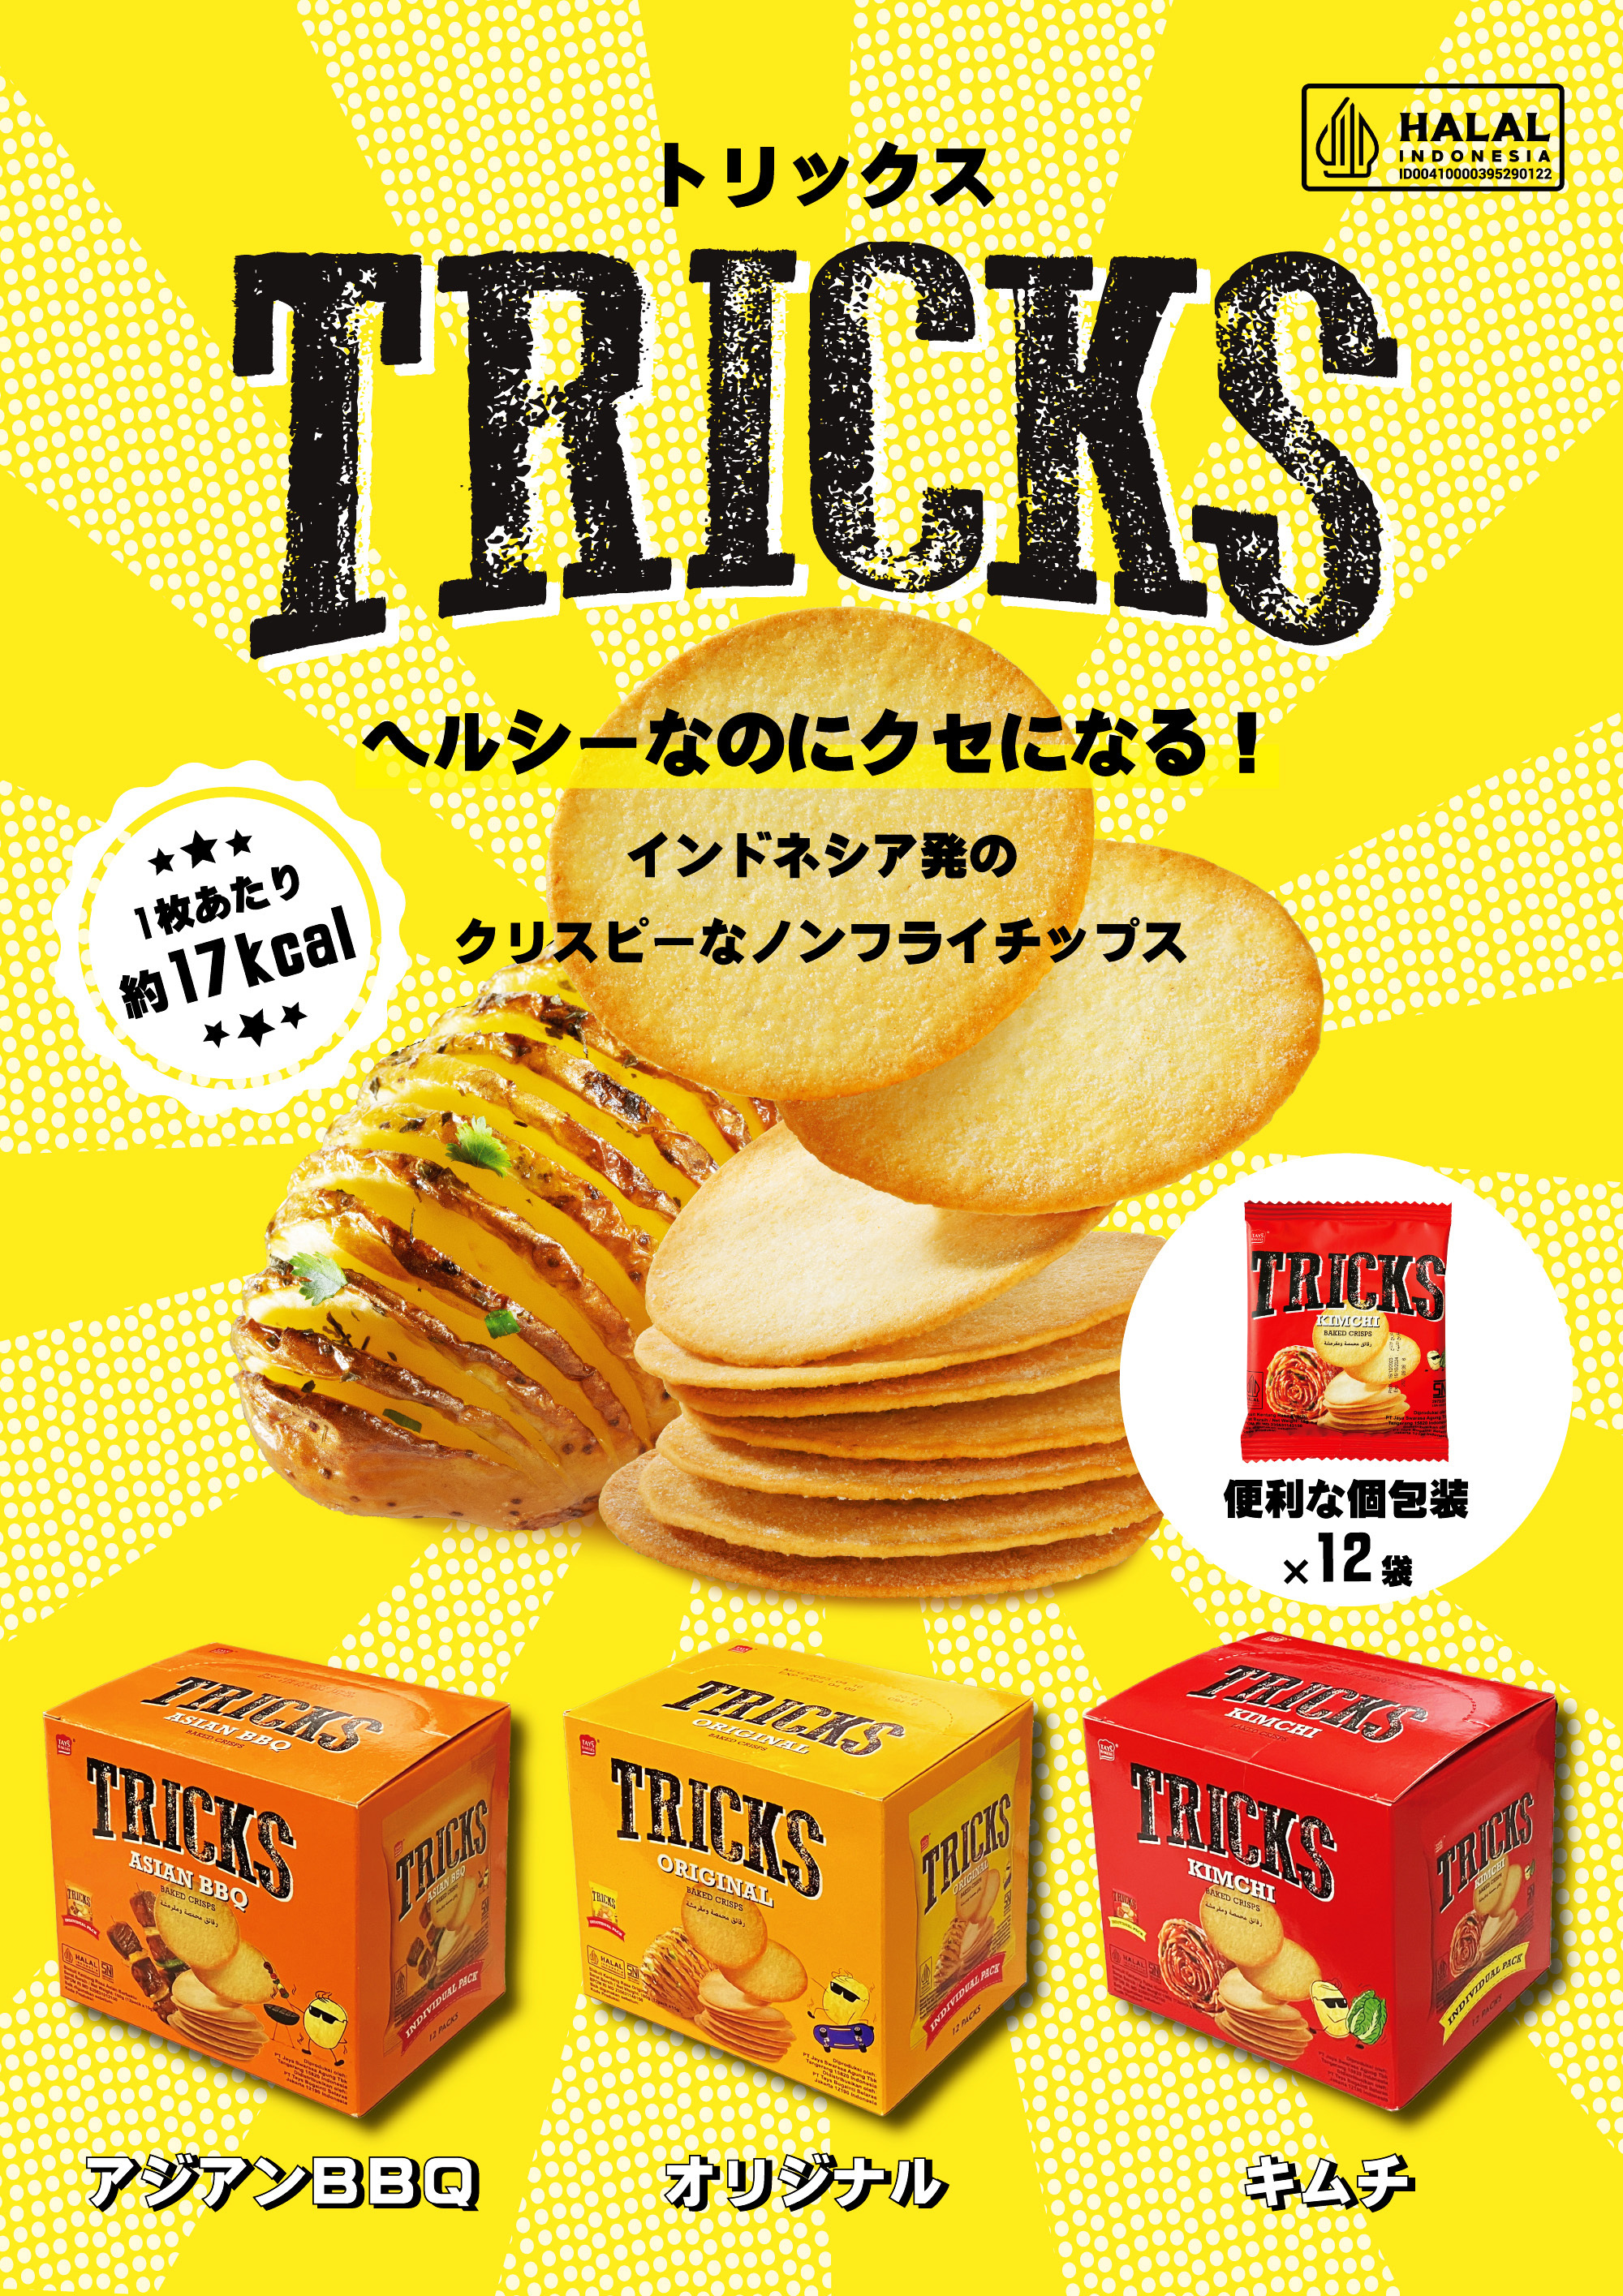 インドネシアの人気菓子が日本上陸！ノンフライポテトチップス
「TRICKS(トリックス)」が1/22(月)全国発売！
渋谷スクランブルスクエアにポップアップショップ出店